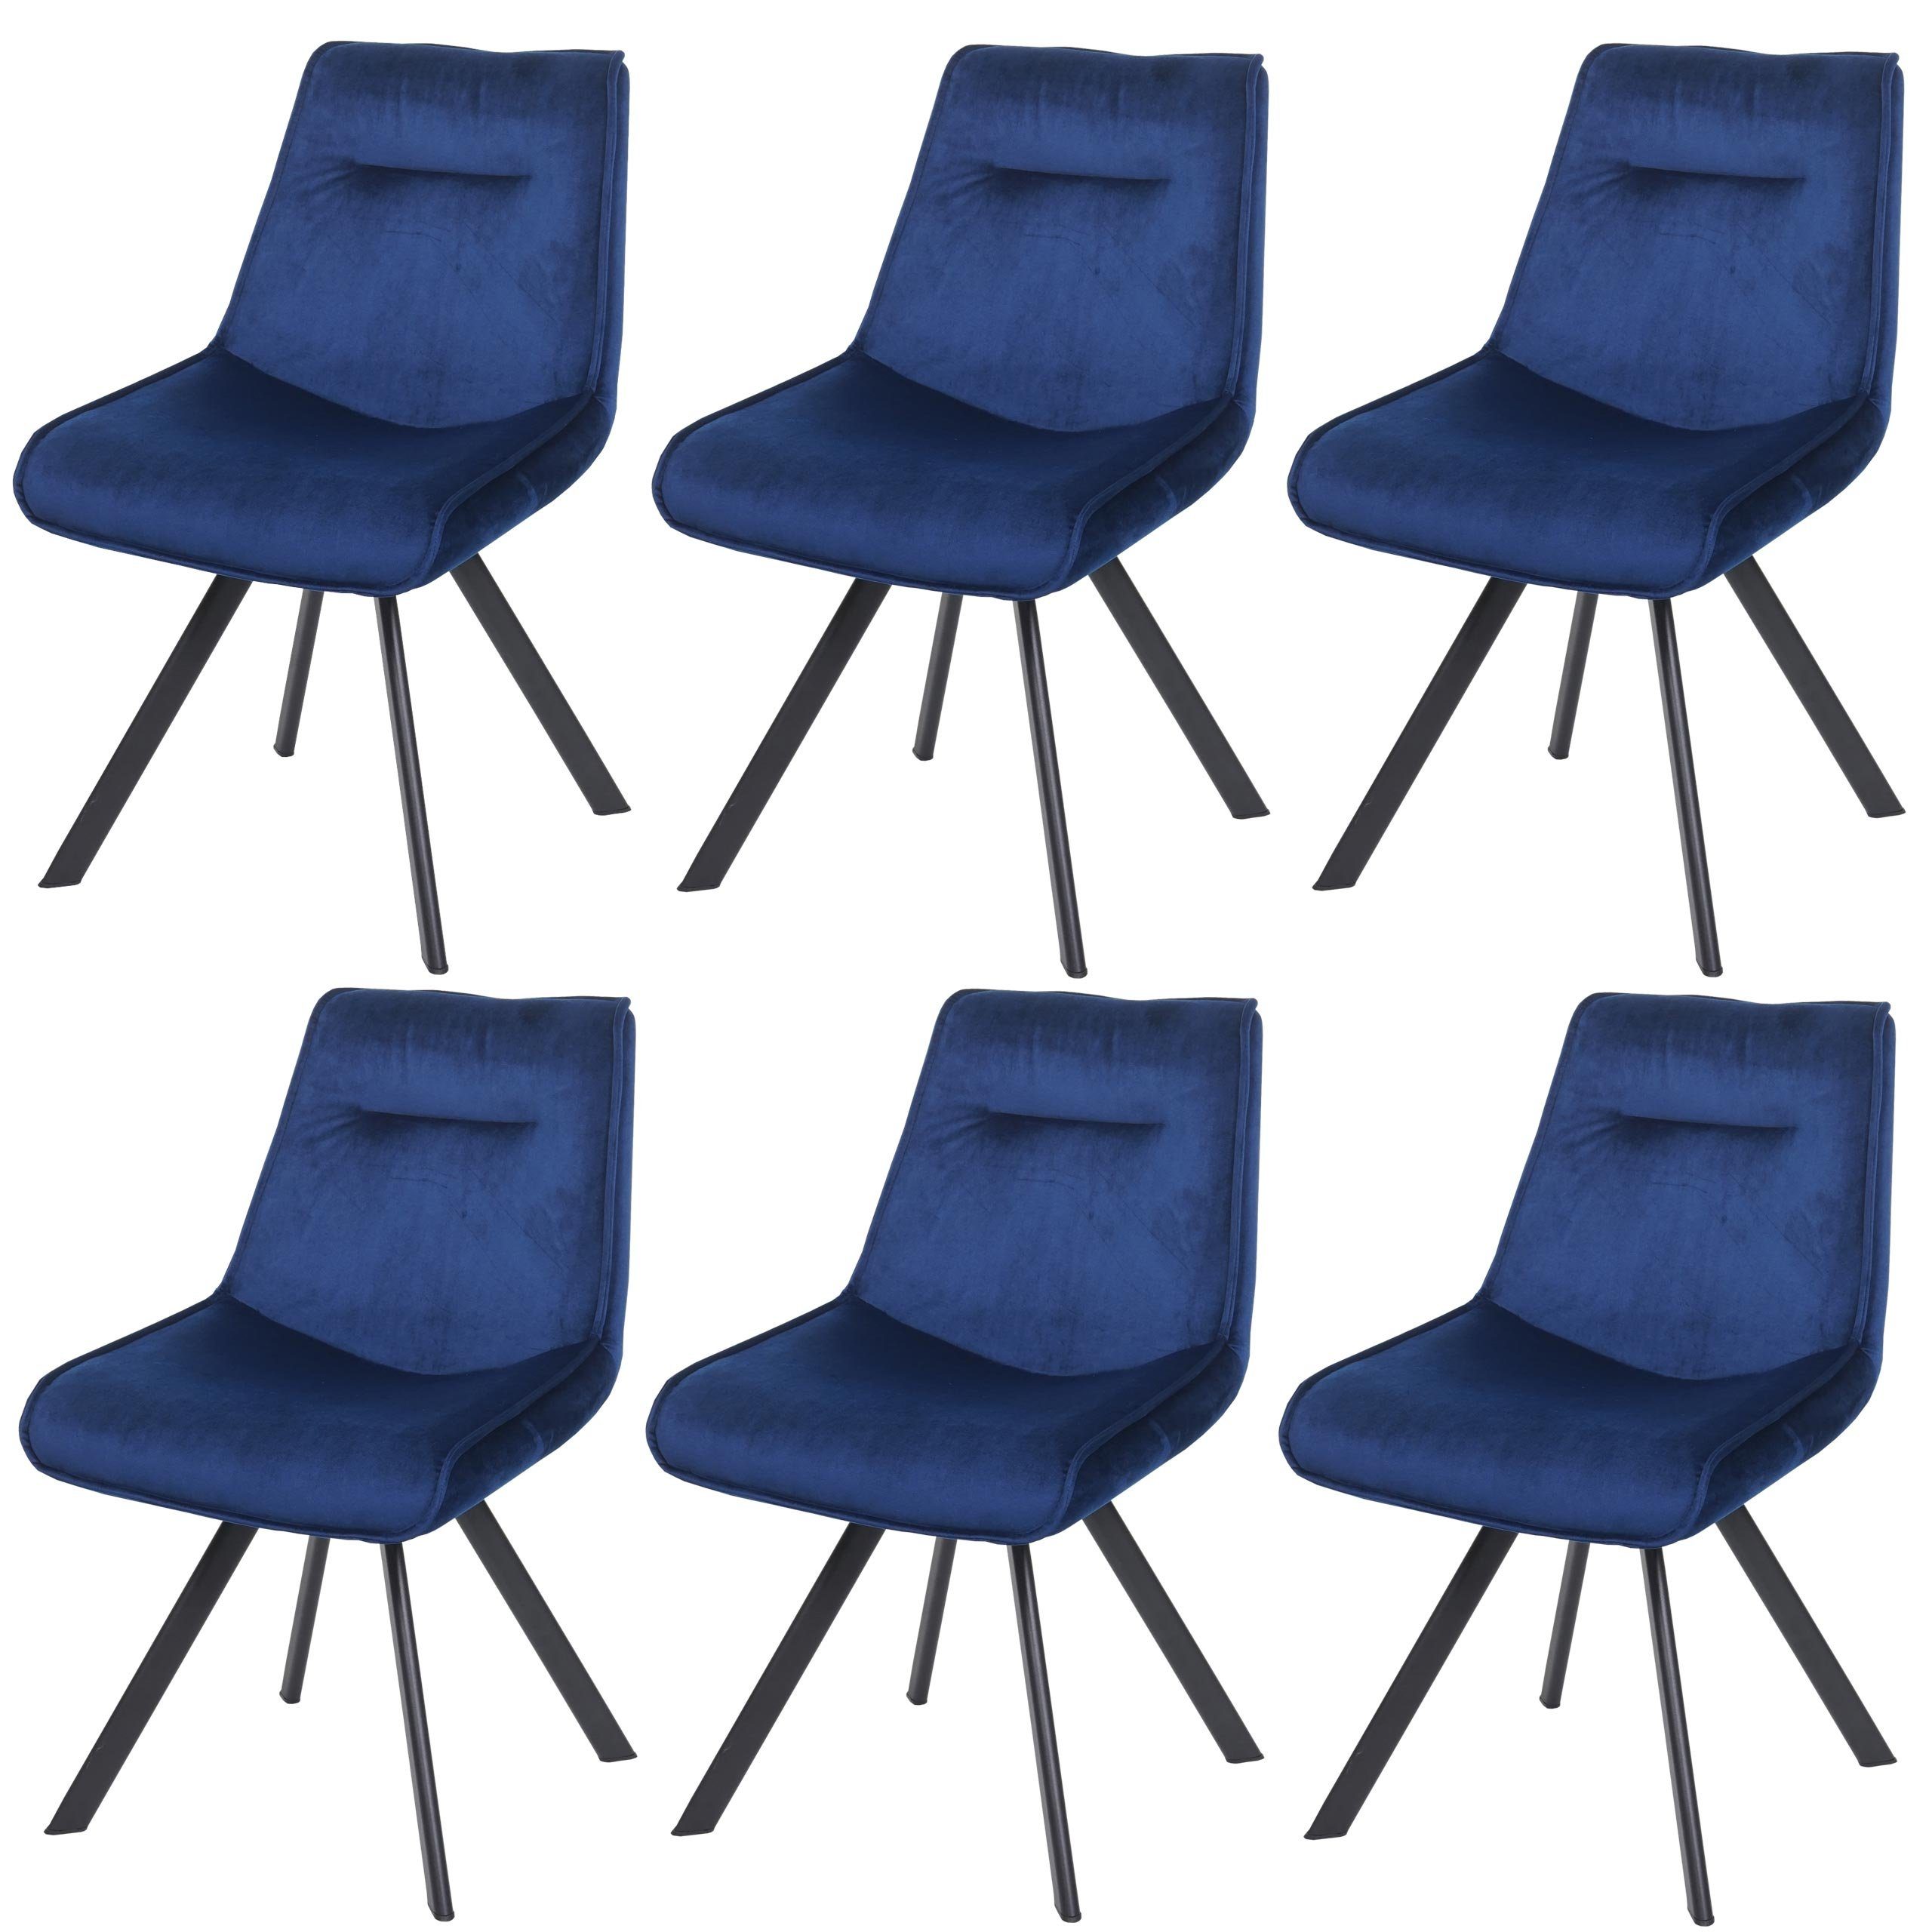 MCW Esszimmerstuhl MCW-K24-6 (6er-Set), Stabiles Stativgestell, Weiche Sitzfläche durch 9cm-Polsterdicke | Stühle